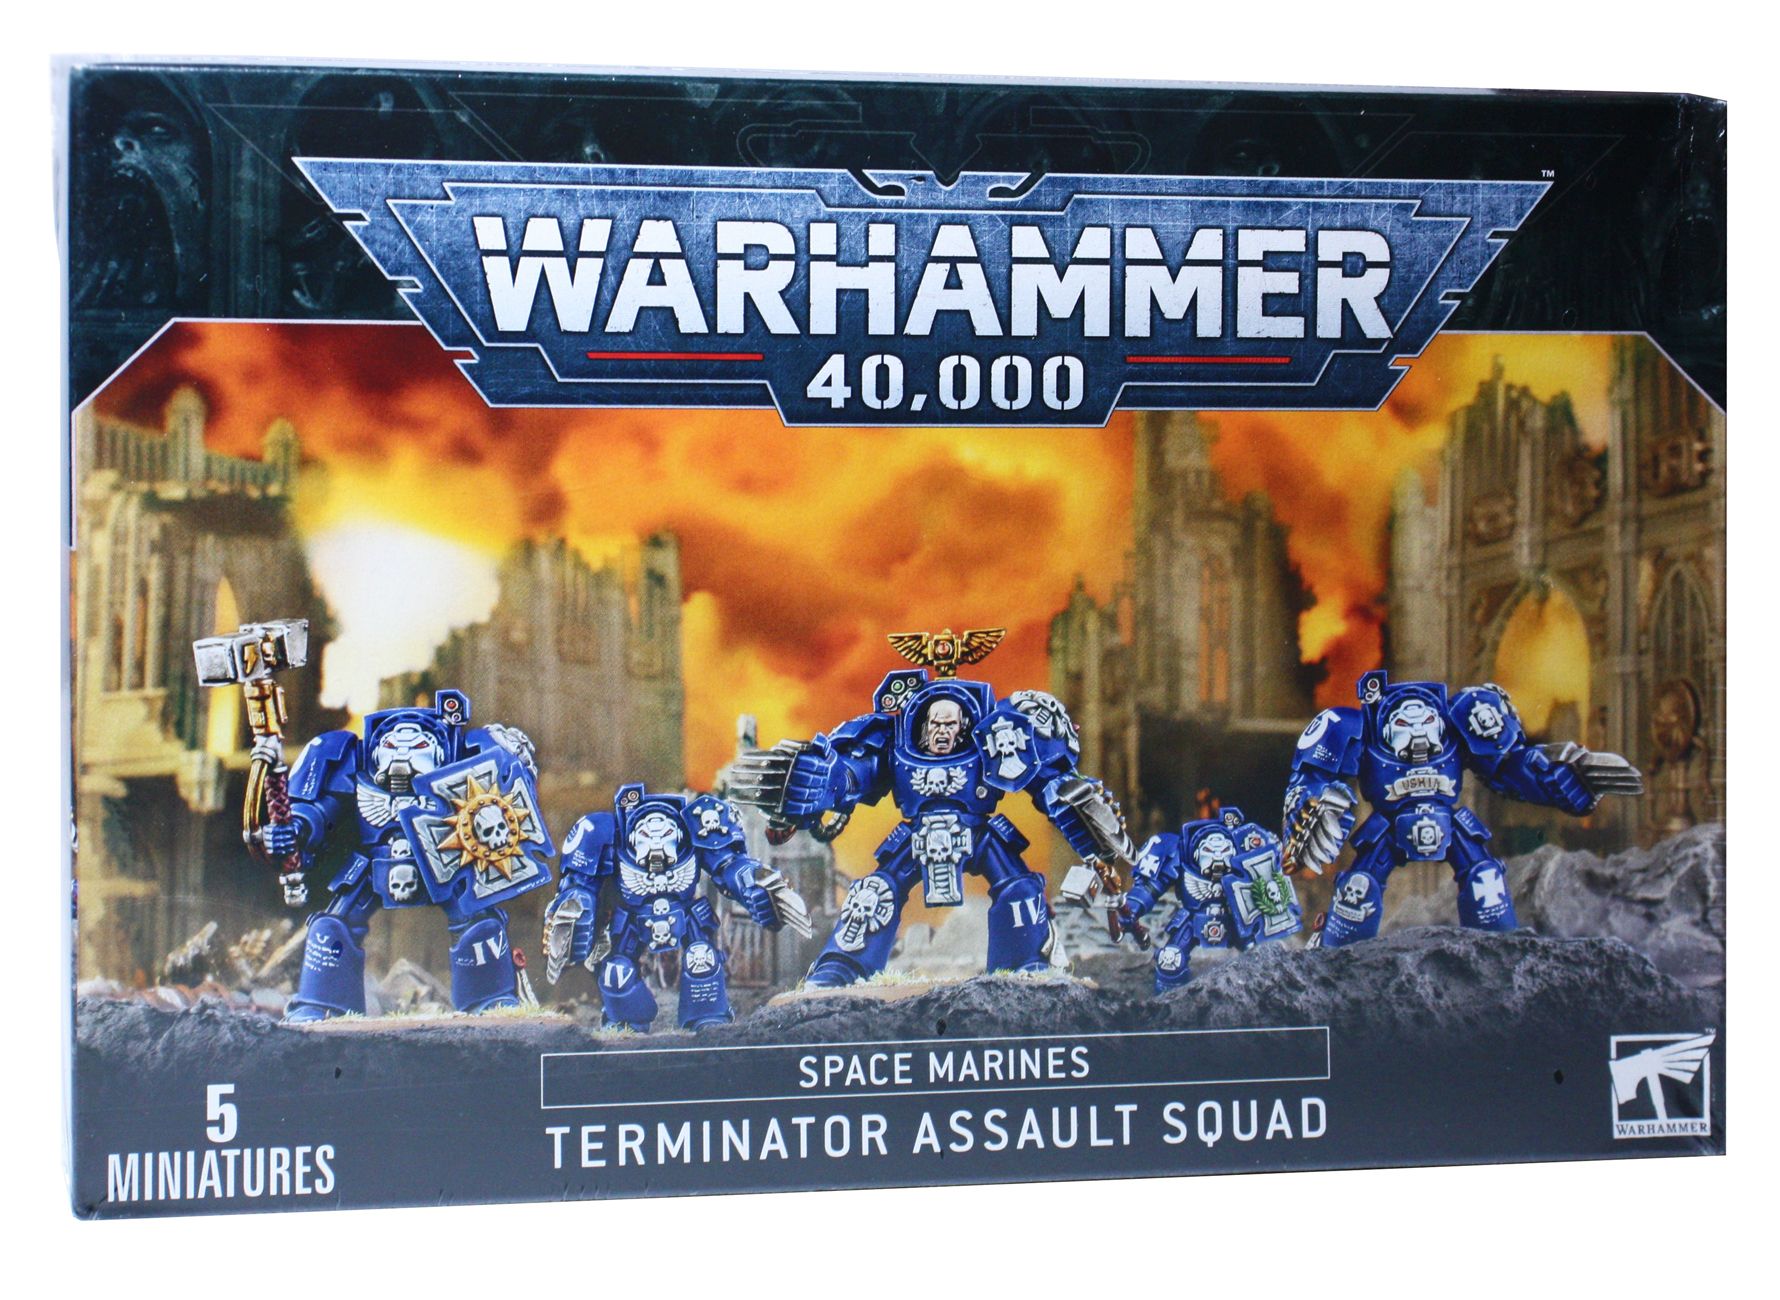 Terminator squad. Space Marine Terminator Assault Squad. Space Marine Terminator Squad. Space Marine Assault Squad. Space Marin Terminator SQUAAD.